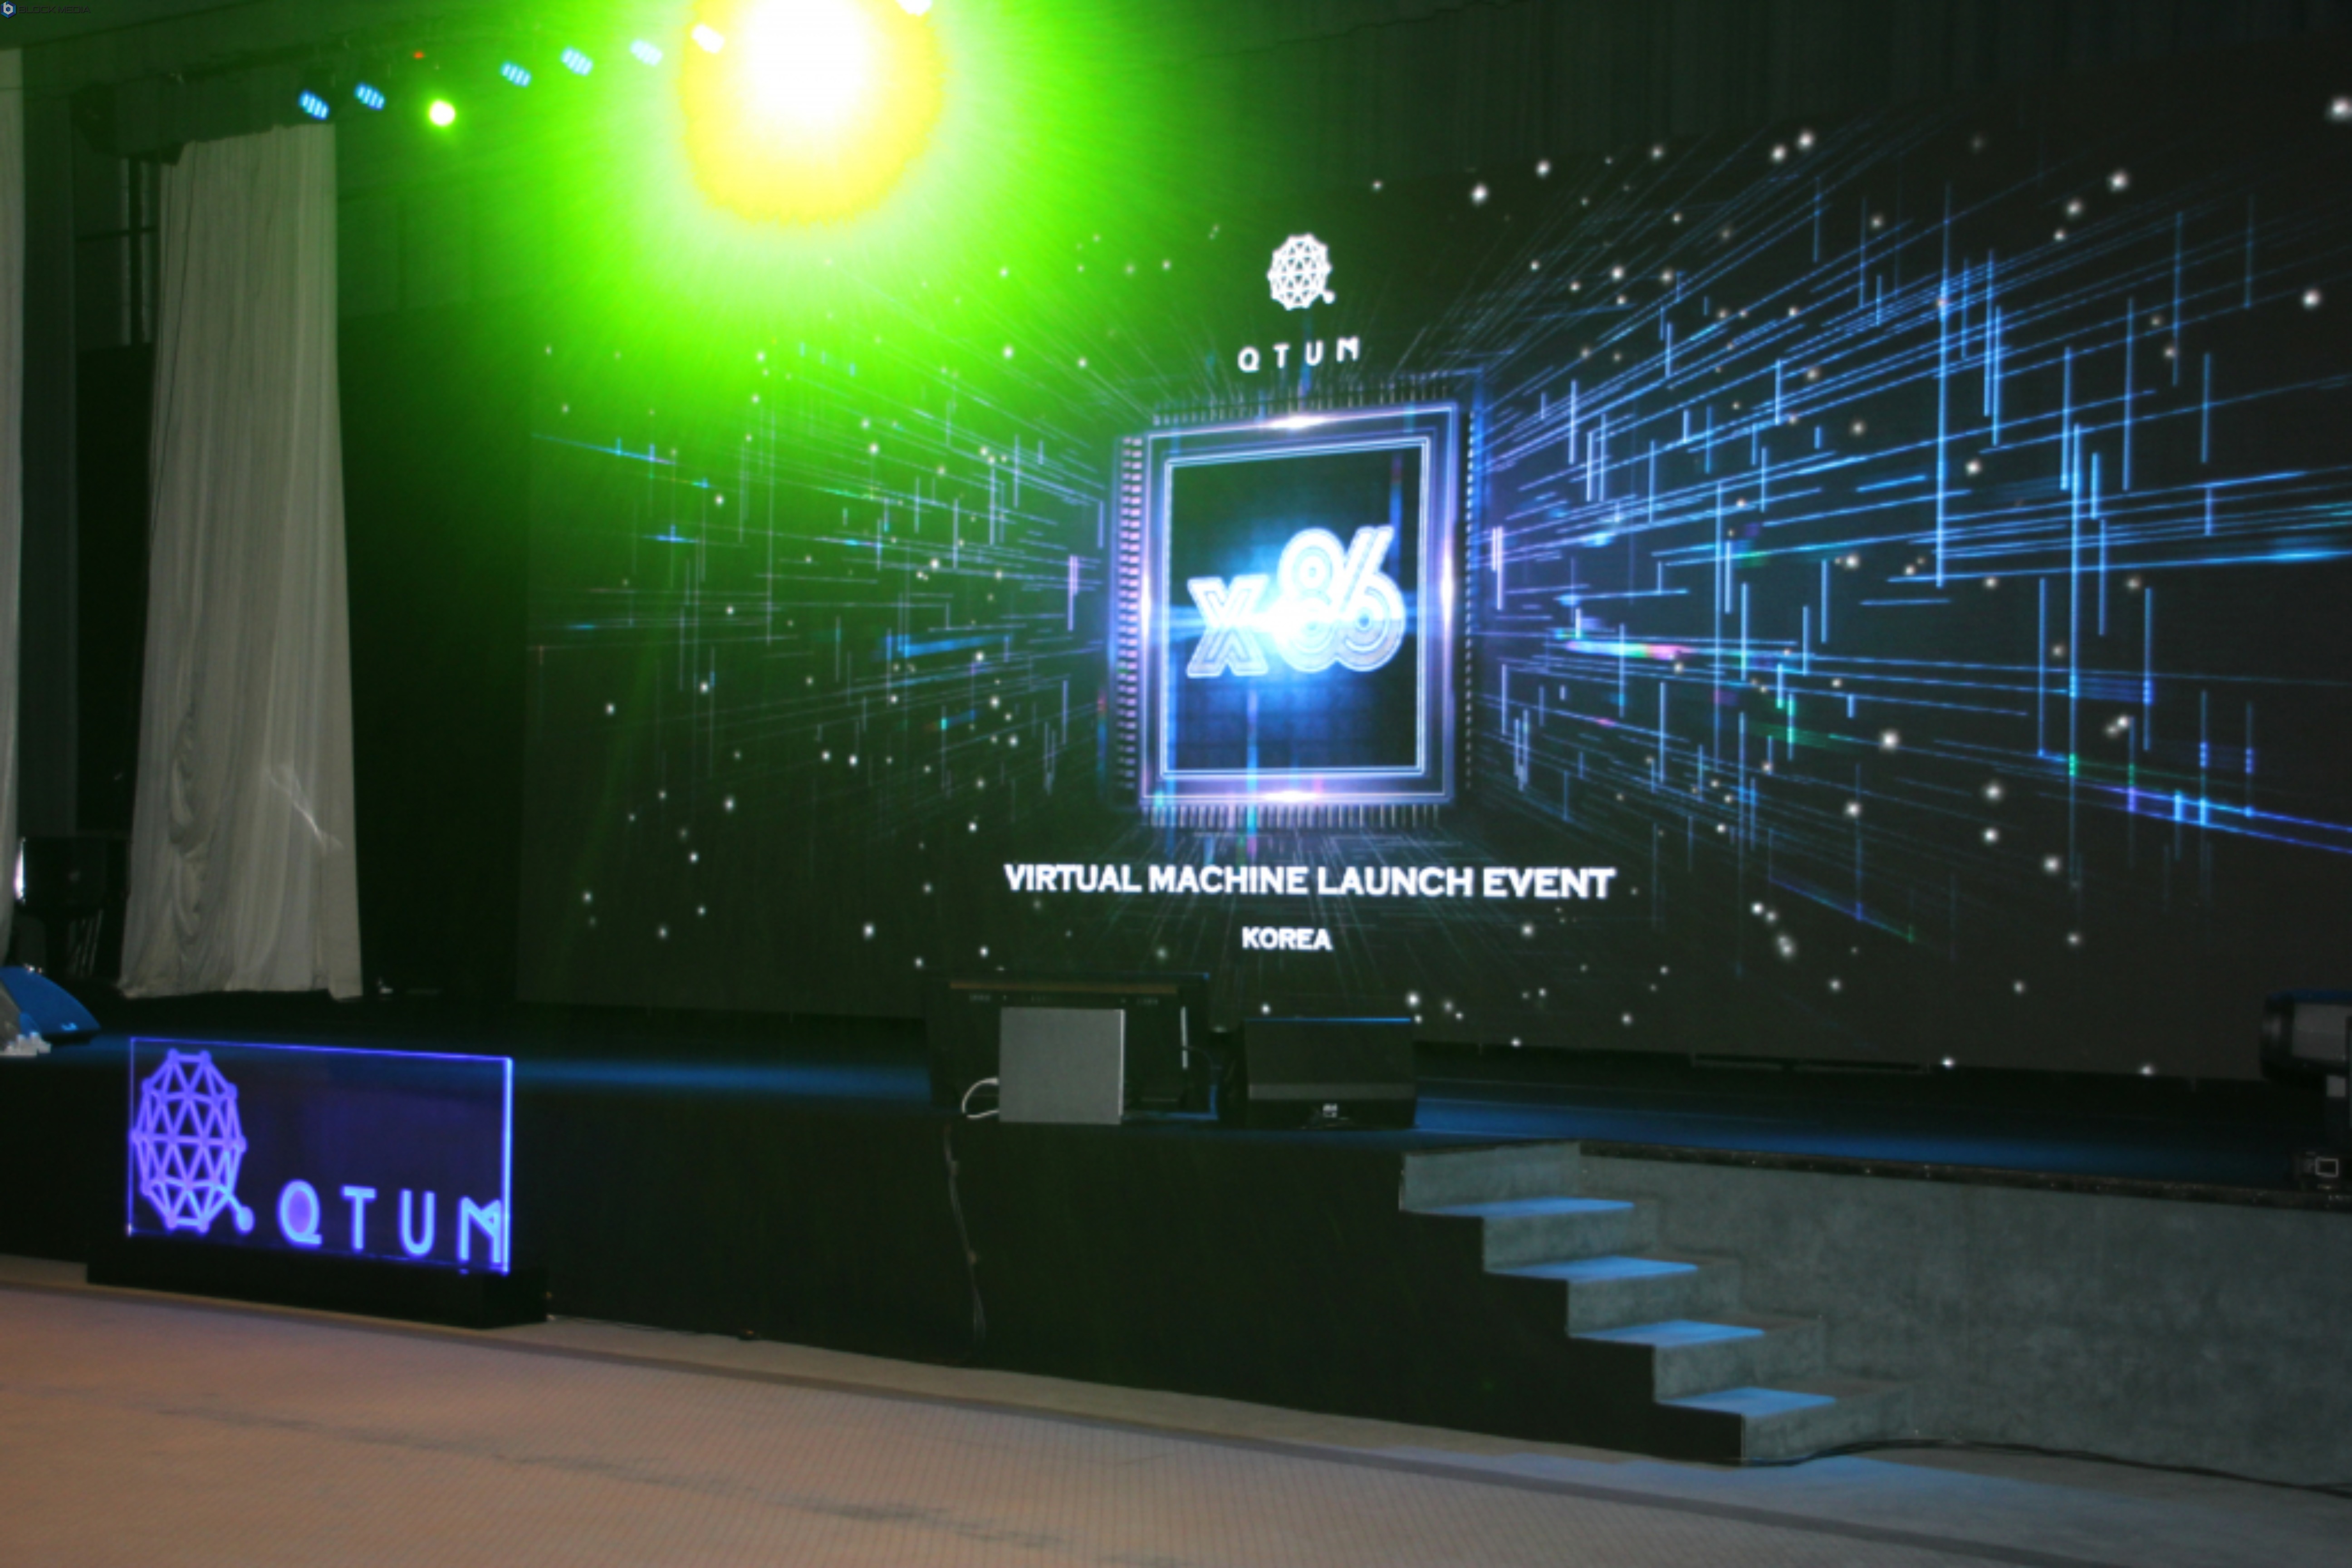 ▲Qtum X86(퀀텀 X86) Virtual Machine Launch(가상 머신 런칭) 이벤트가 지난 23일 오후 7시부터 11시까지 서울 용산구 그랜드 하야트 호텔에서 개최됐다. 